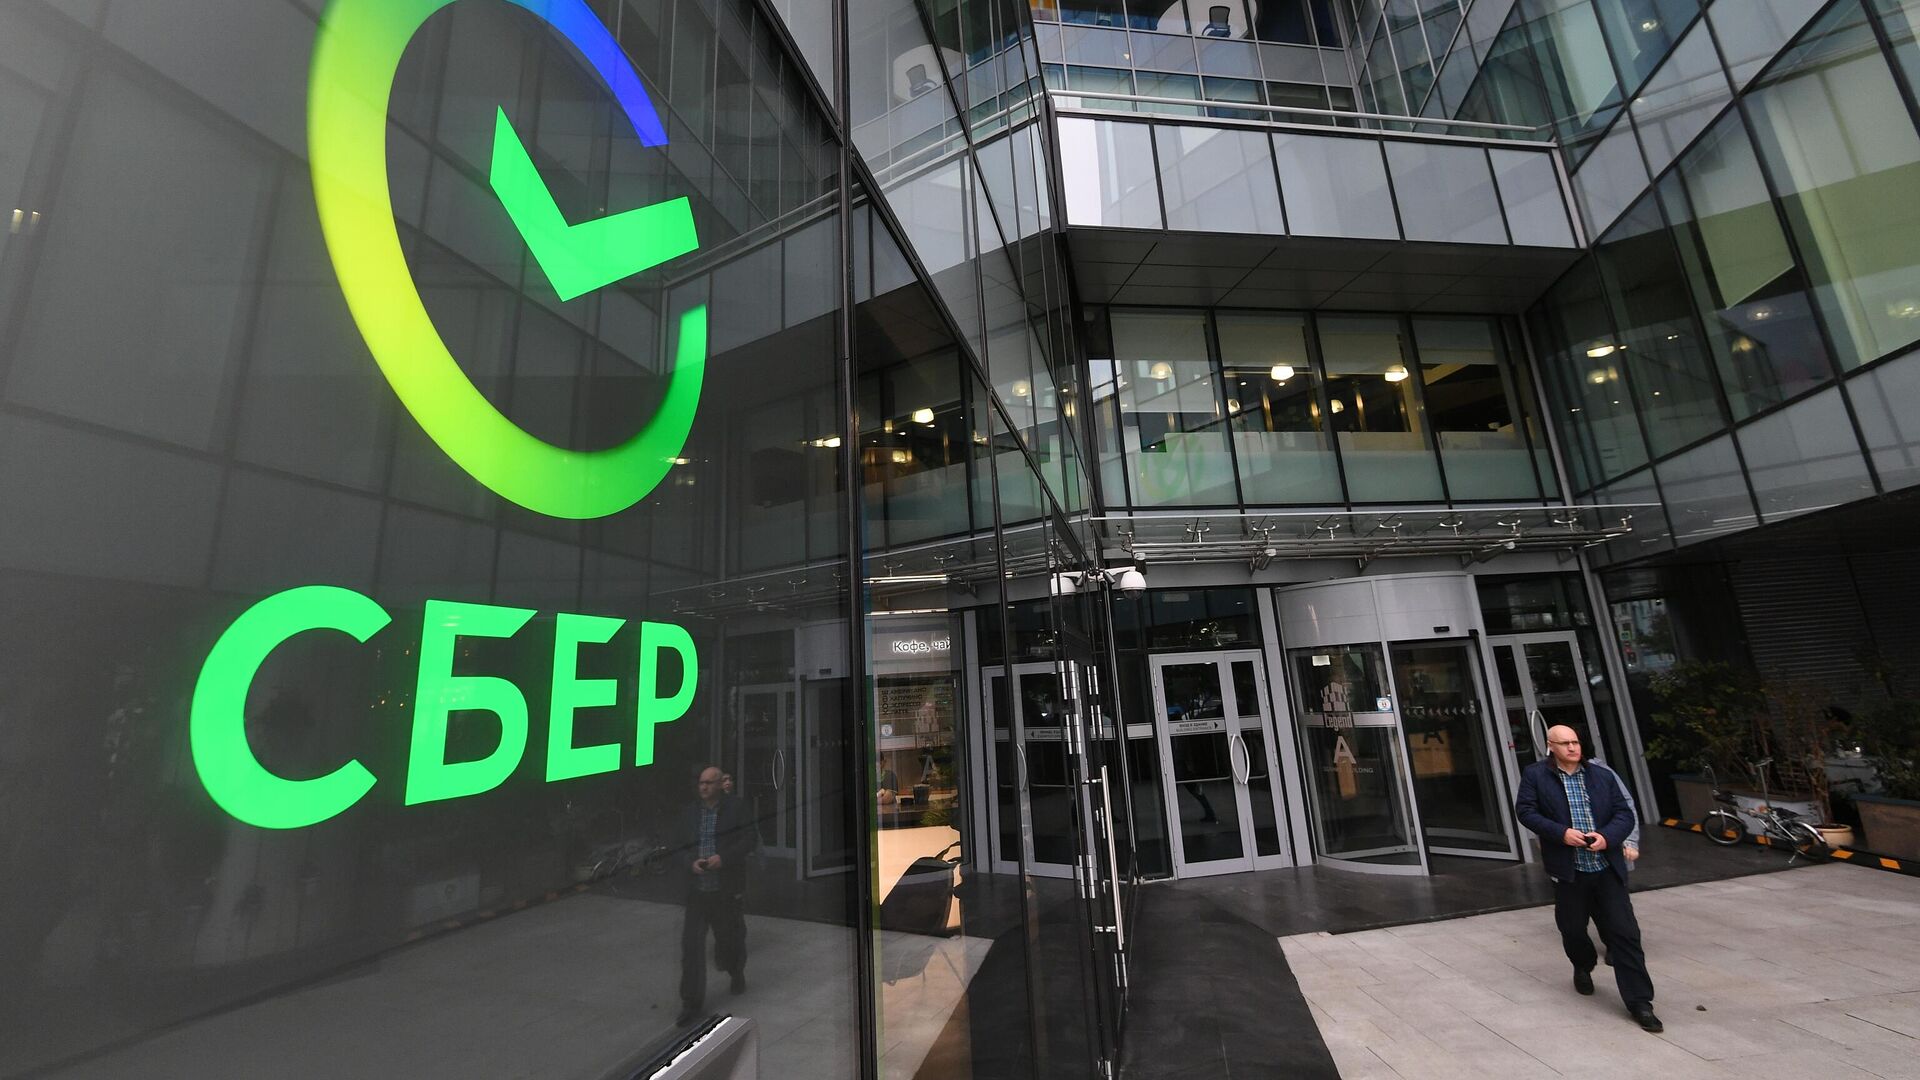 O nouă moarte suspectă în Rusia. Vicepreşedintele Sberbank, cea mai mare bancă de stat, a decedat la 42 de ani